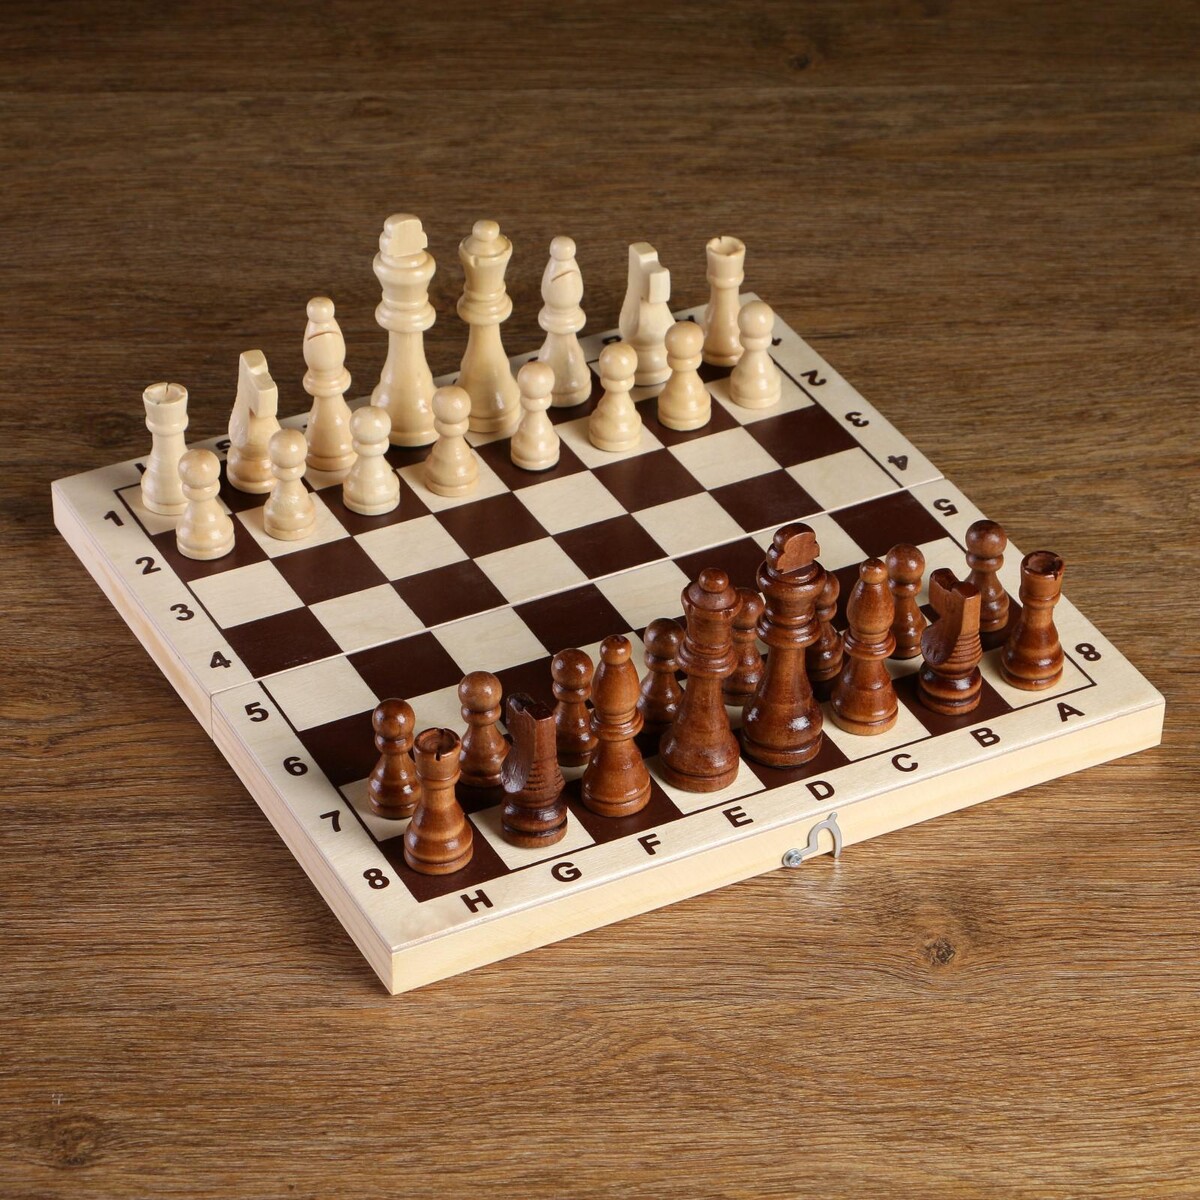 Шахматные фигуры, король h-8 см, пешка h-4 см титановый король